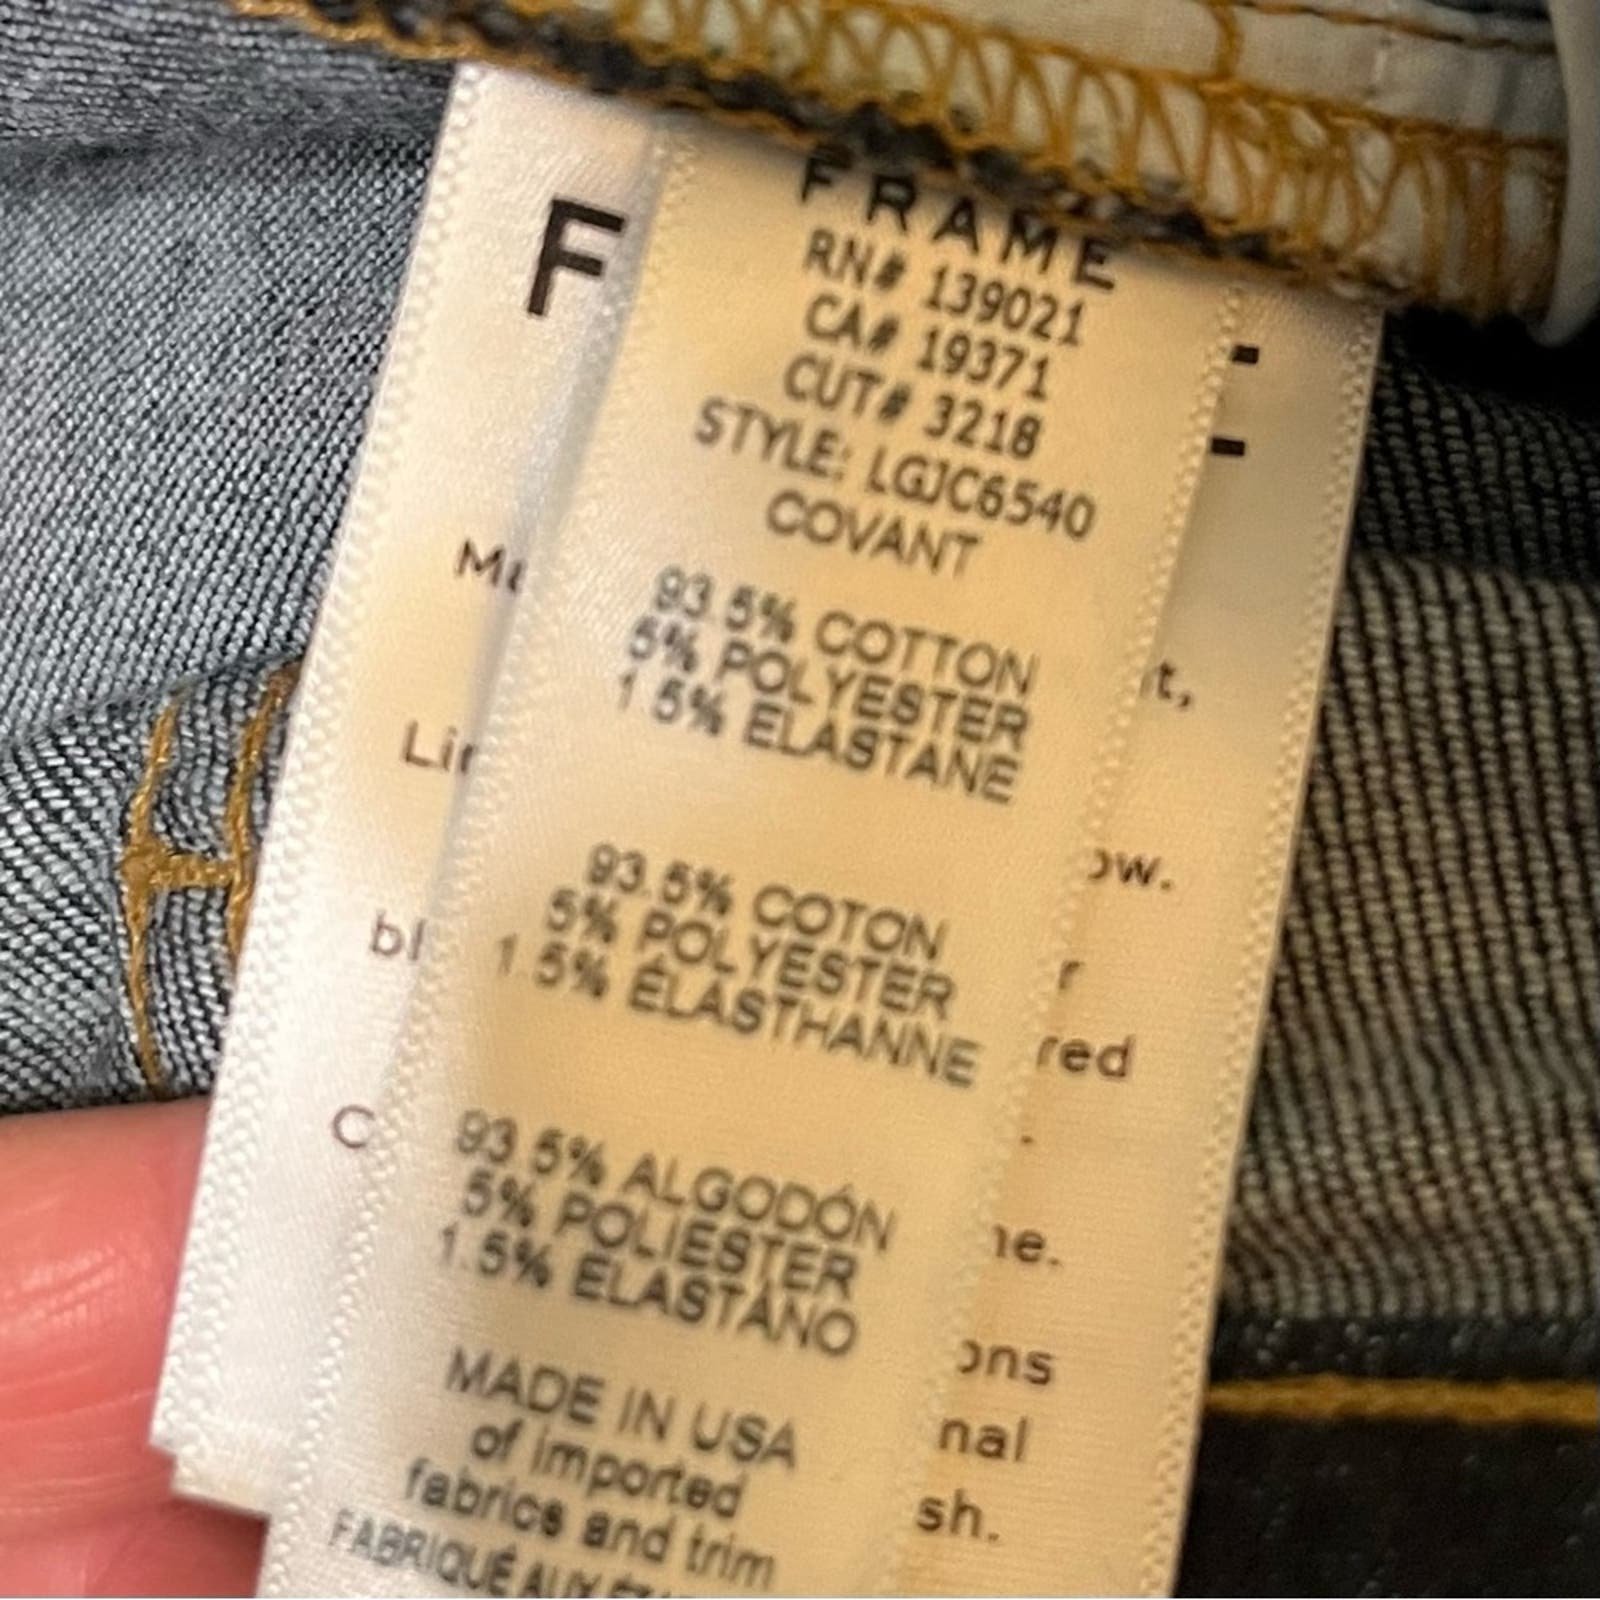 the Lowest price Frame Denim Le Garçon Crop Jeans 26 Covant Dark Wash EUC Mid Rise omdwF5lou US Outlet